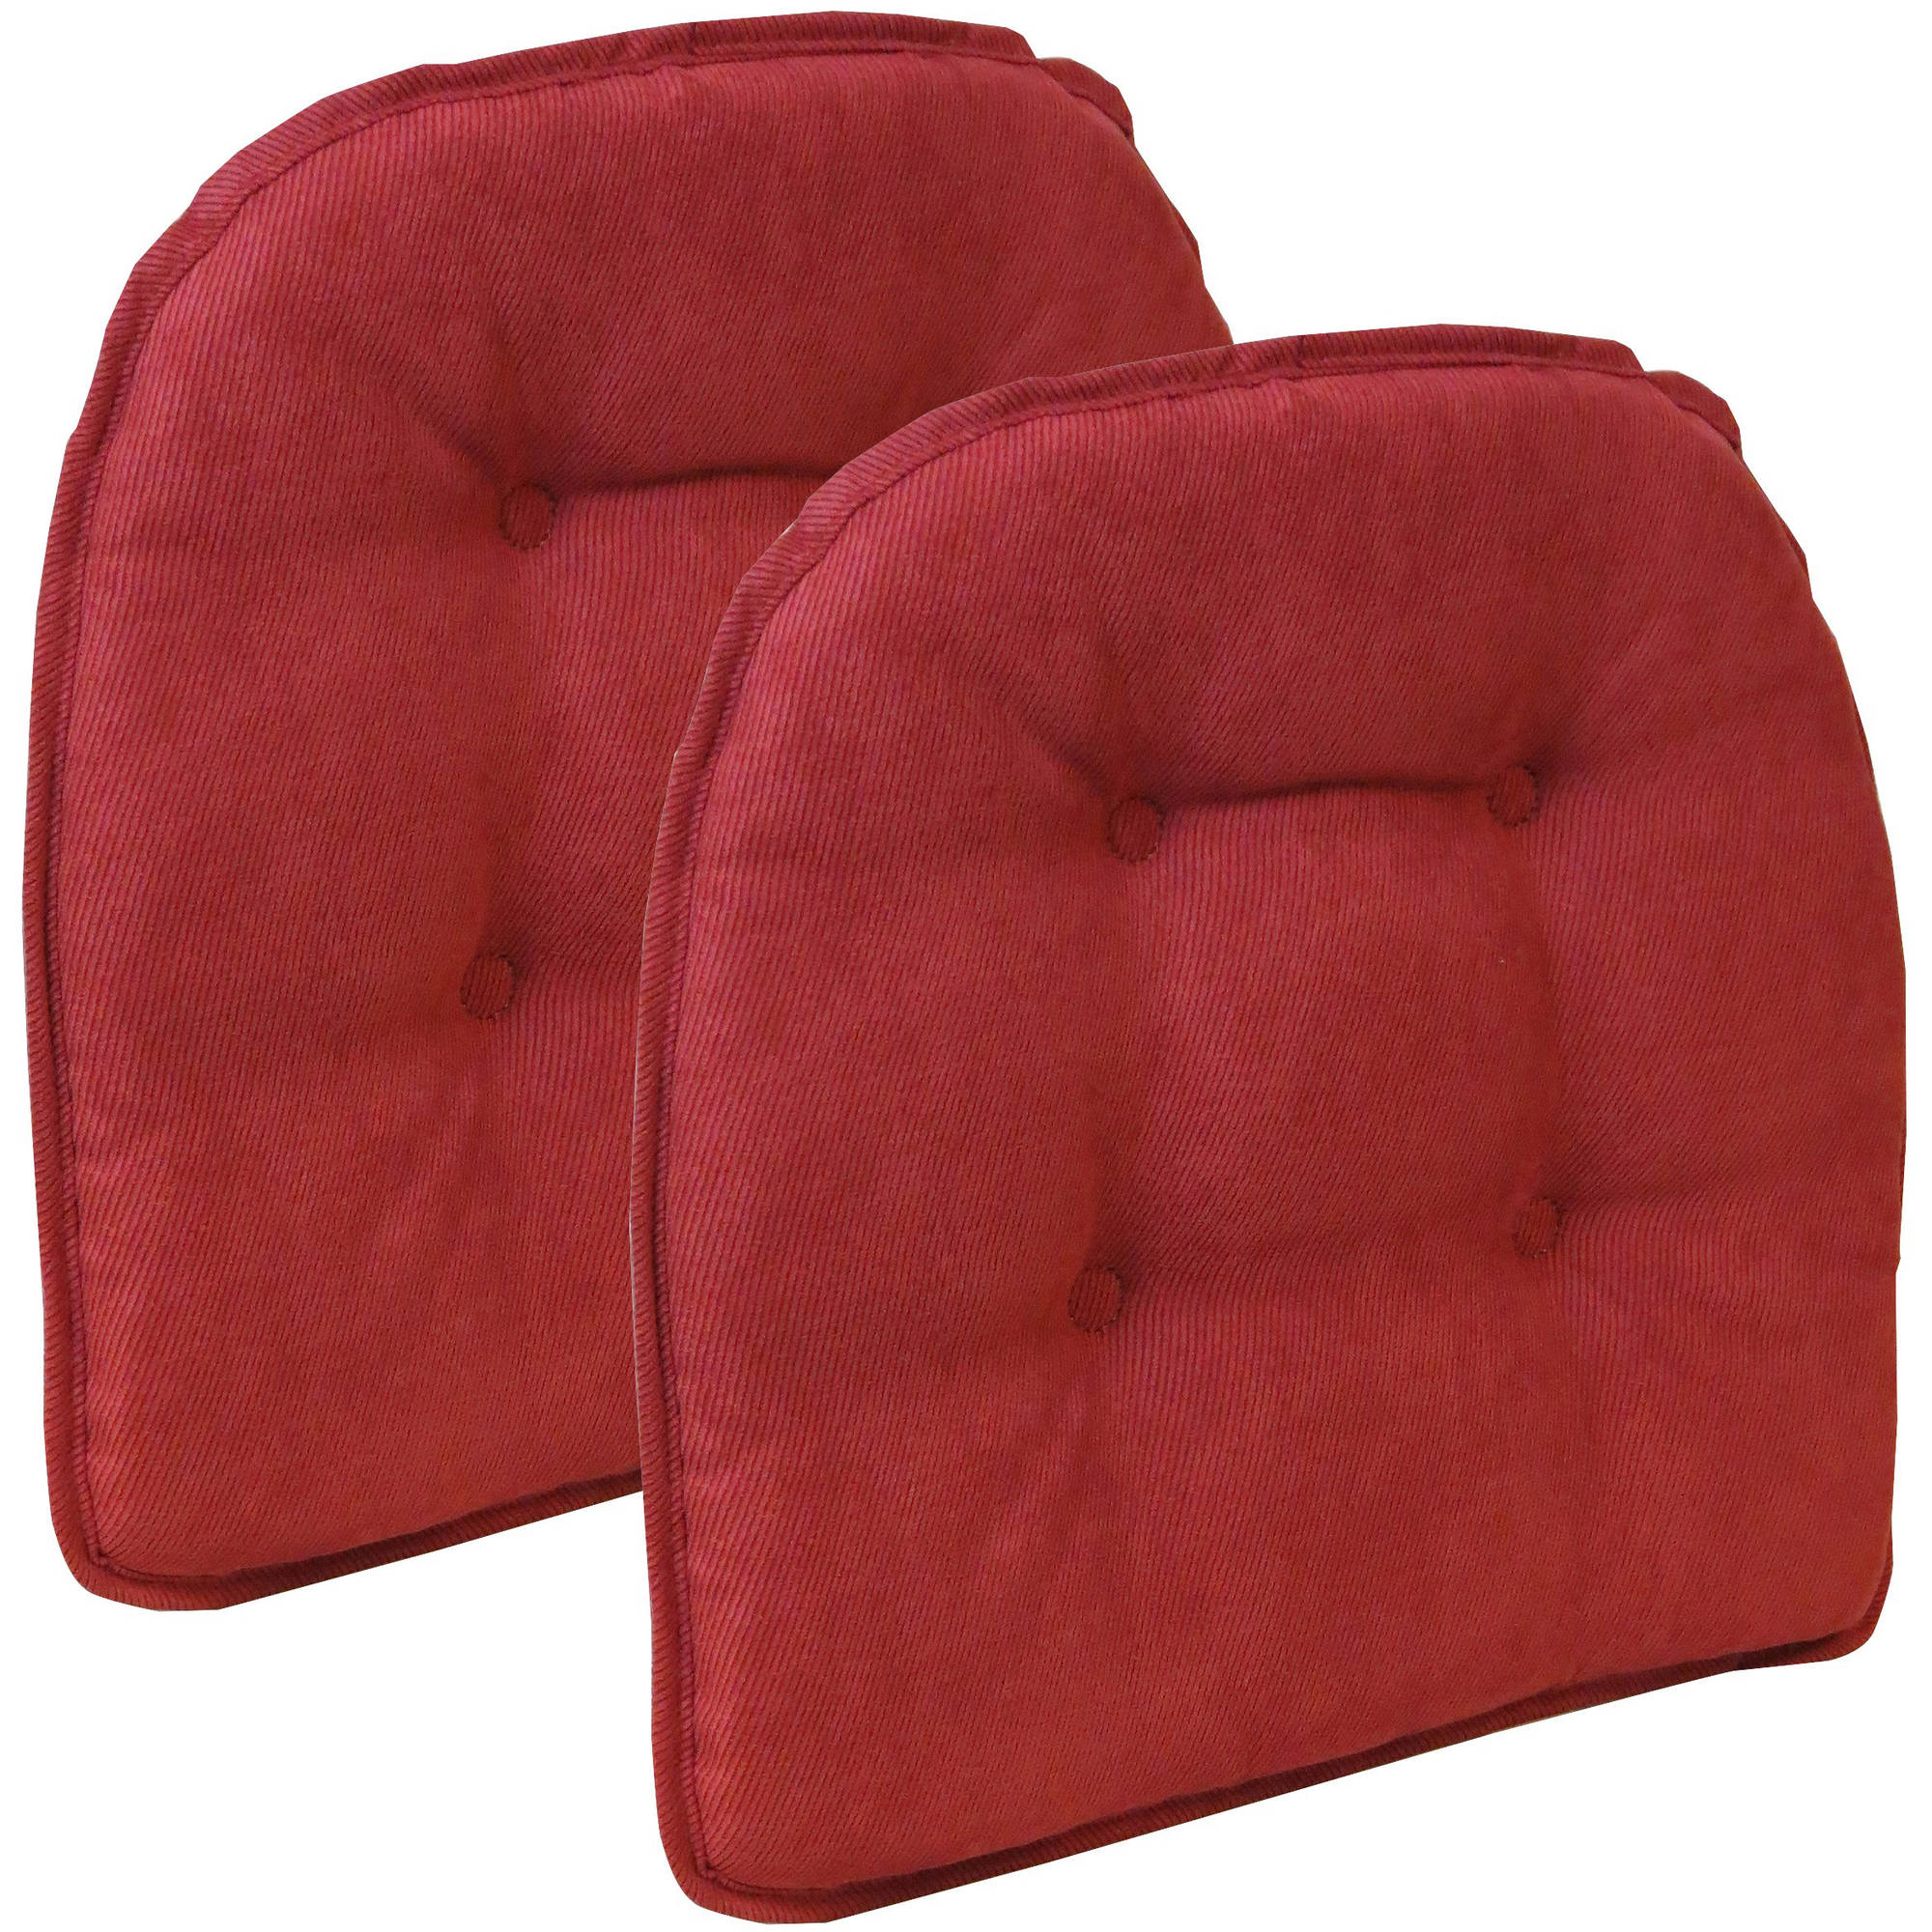 https://visualhunt.com/photos/13/gripper-non-slip-15-x-16-nouveau-tufted-chair-cushions.jpg